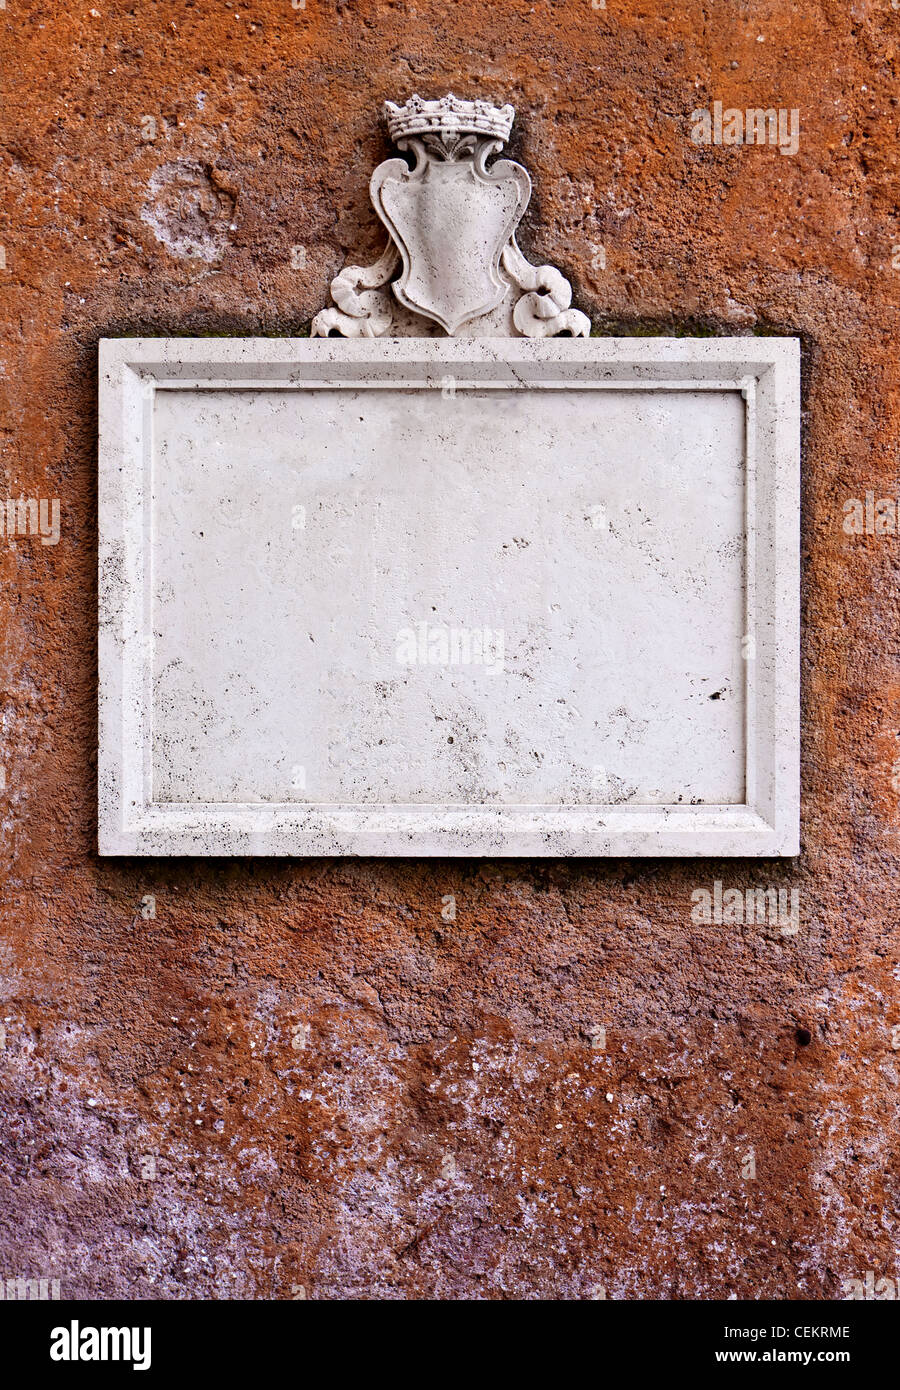 Cartel de piedra colgada en la pared Foto de stock